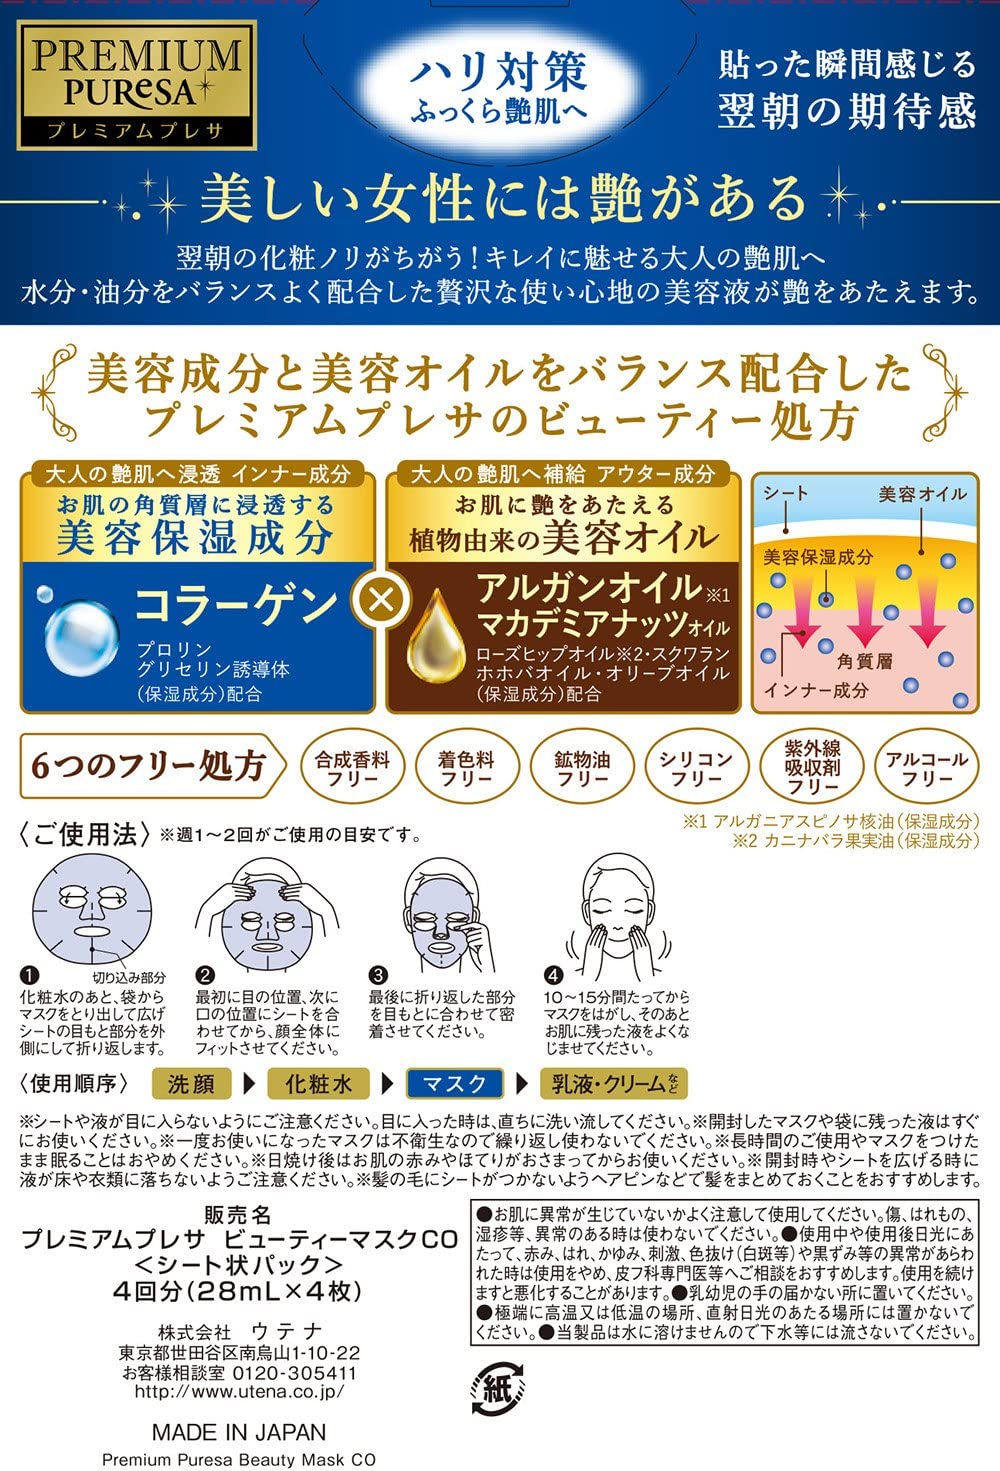 Utena Premium Puresa Beauty Face Mask 4pcs - Collagen - NihonMura